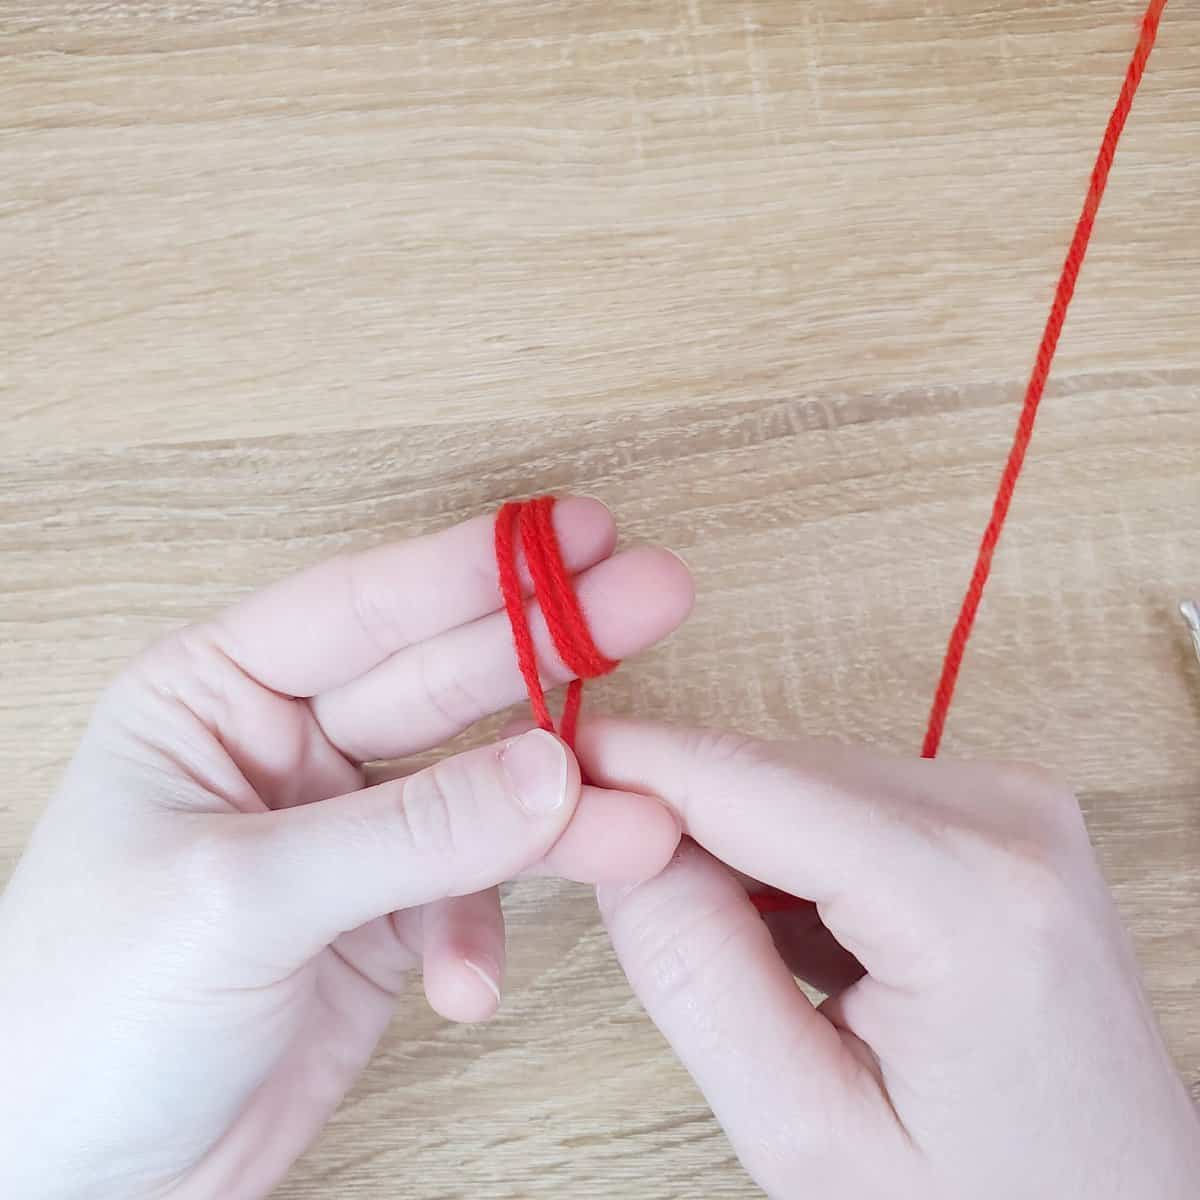 Mini Pom-Pom wrap the yarn